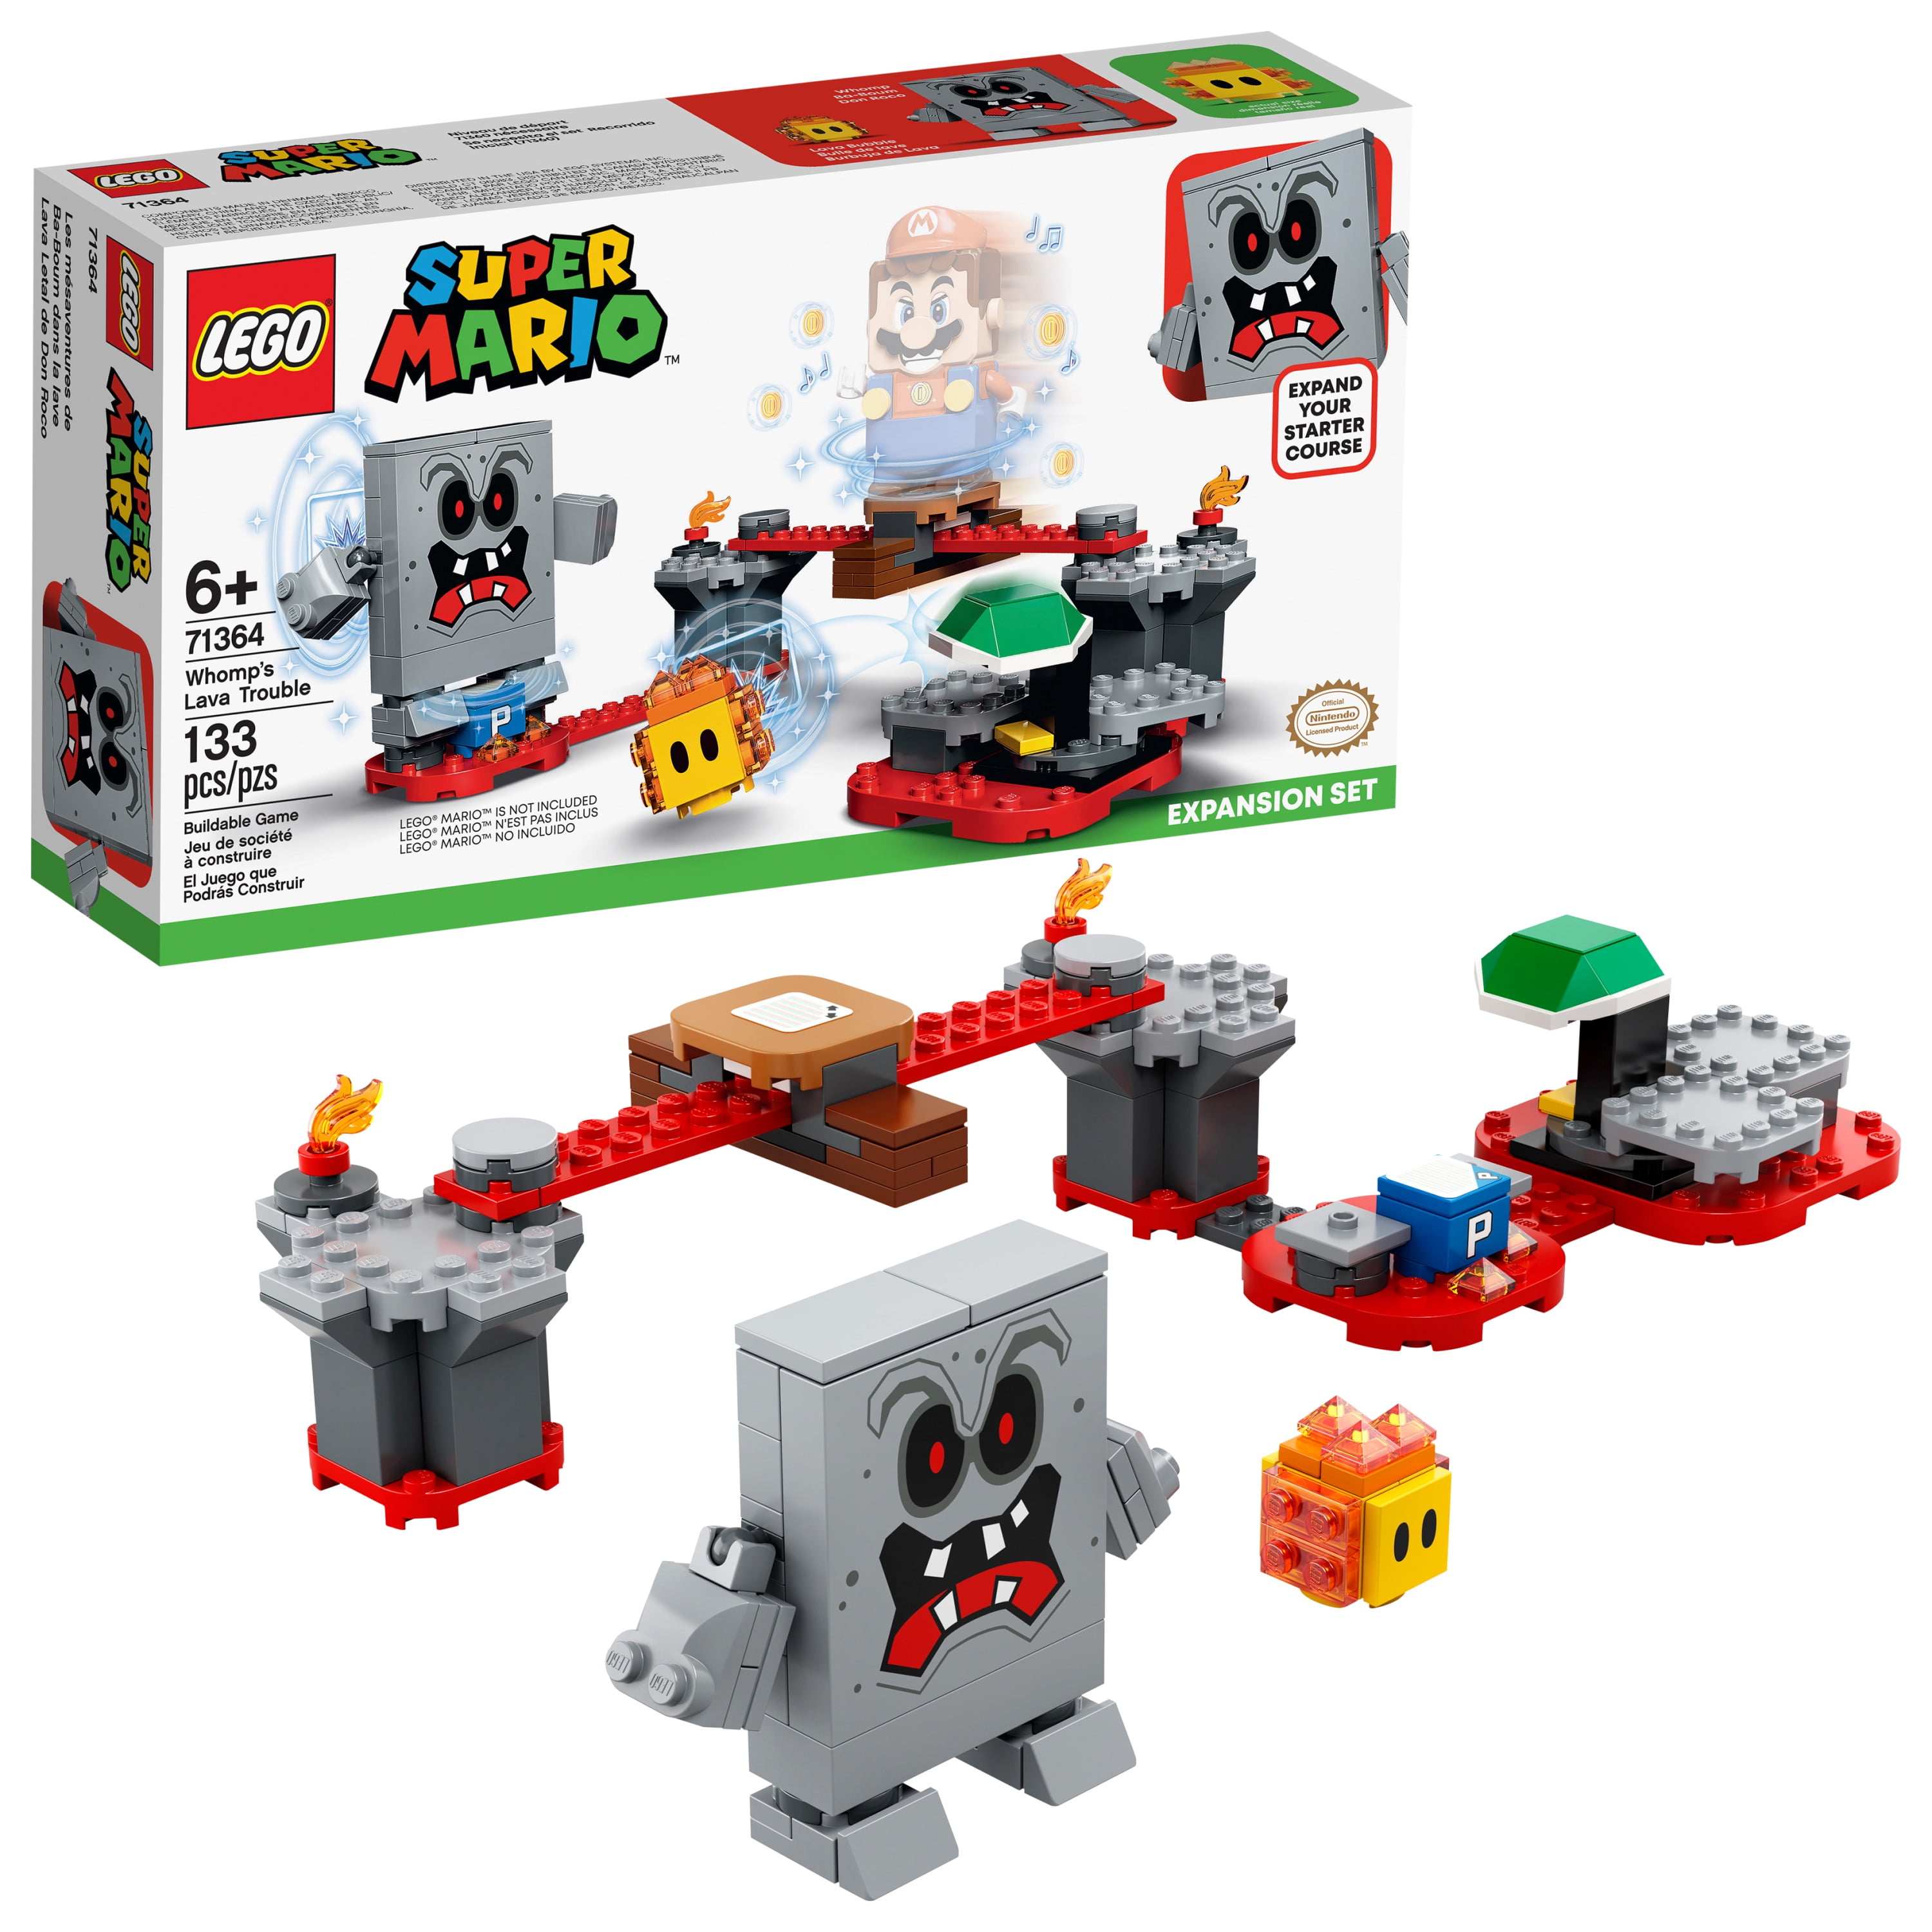 Scorch video harmonisk LEGO Super Mario Whomp's Lava Trouble Expansion Set 71364 Building Set (133  Pieces) - Walmart.com